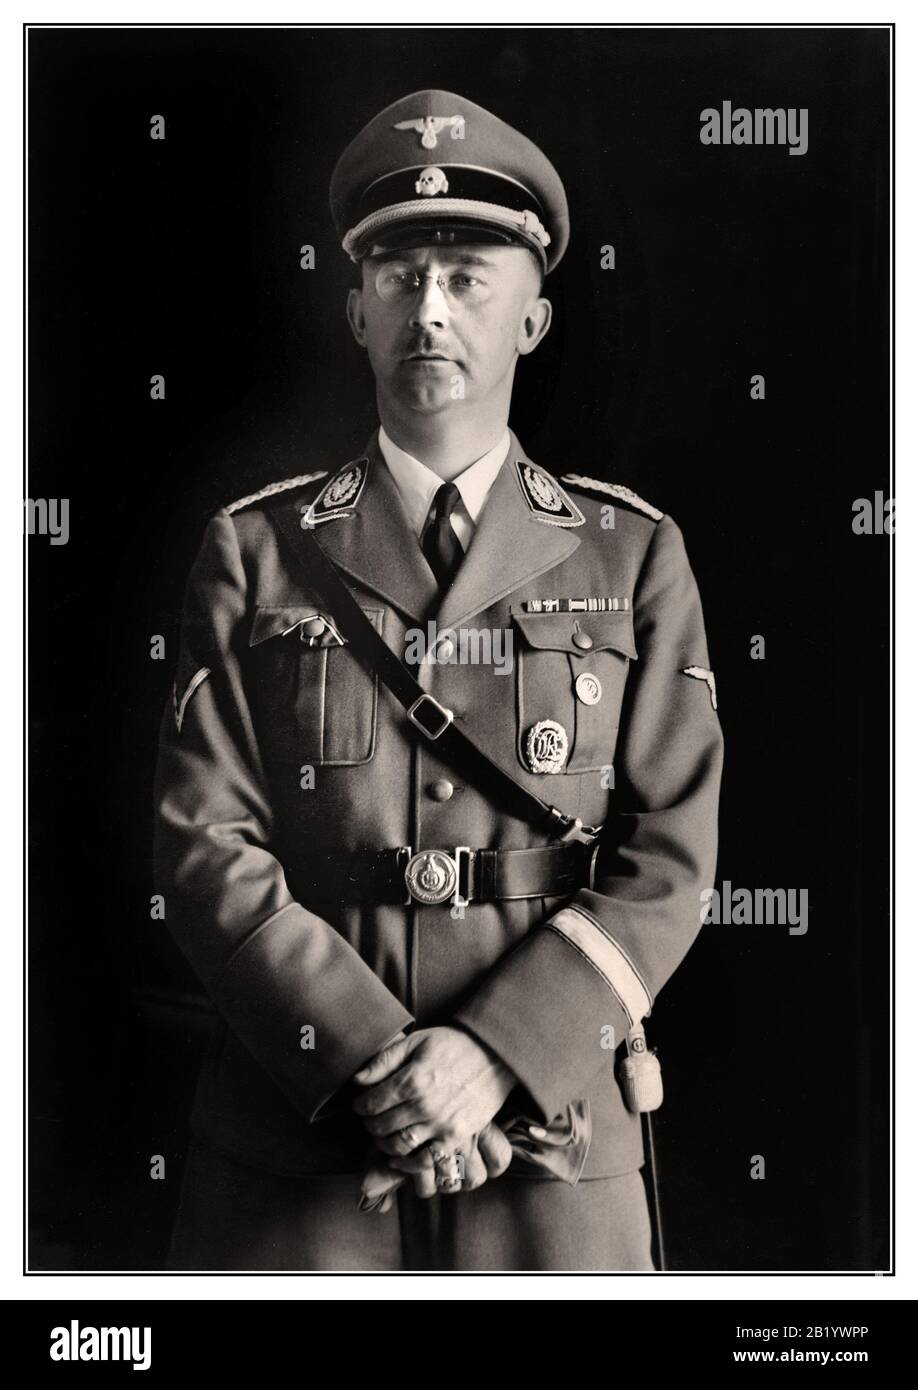 Heinrich Himmler Archive Portrait 1940 Reichsführer Heinrich Himmler, chef de police et SS au troisième Reich. Photo portrait prise à l'occasion de son 40ème anniversaire. Heinrich Luitpold Himmler était Reichsführer de la Schutzstaffel, et un membre de premier plan du parti nazi d'Allemagne. Himmler était l'un des hommes les plus puissants de l'Allemagne nazie et un architecte principal de l'holocauste. Sans aucun doute coupable de crimes de guerre contre l'humanité, s'est suicidé en attendant le procès. Banque D'Images